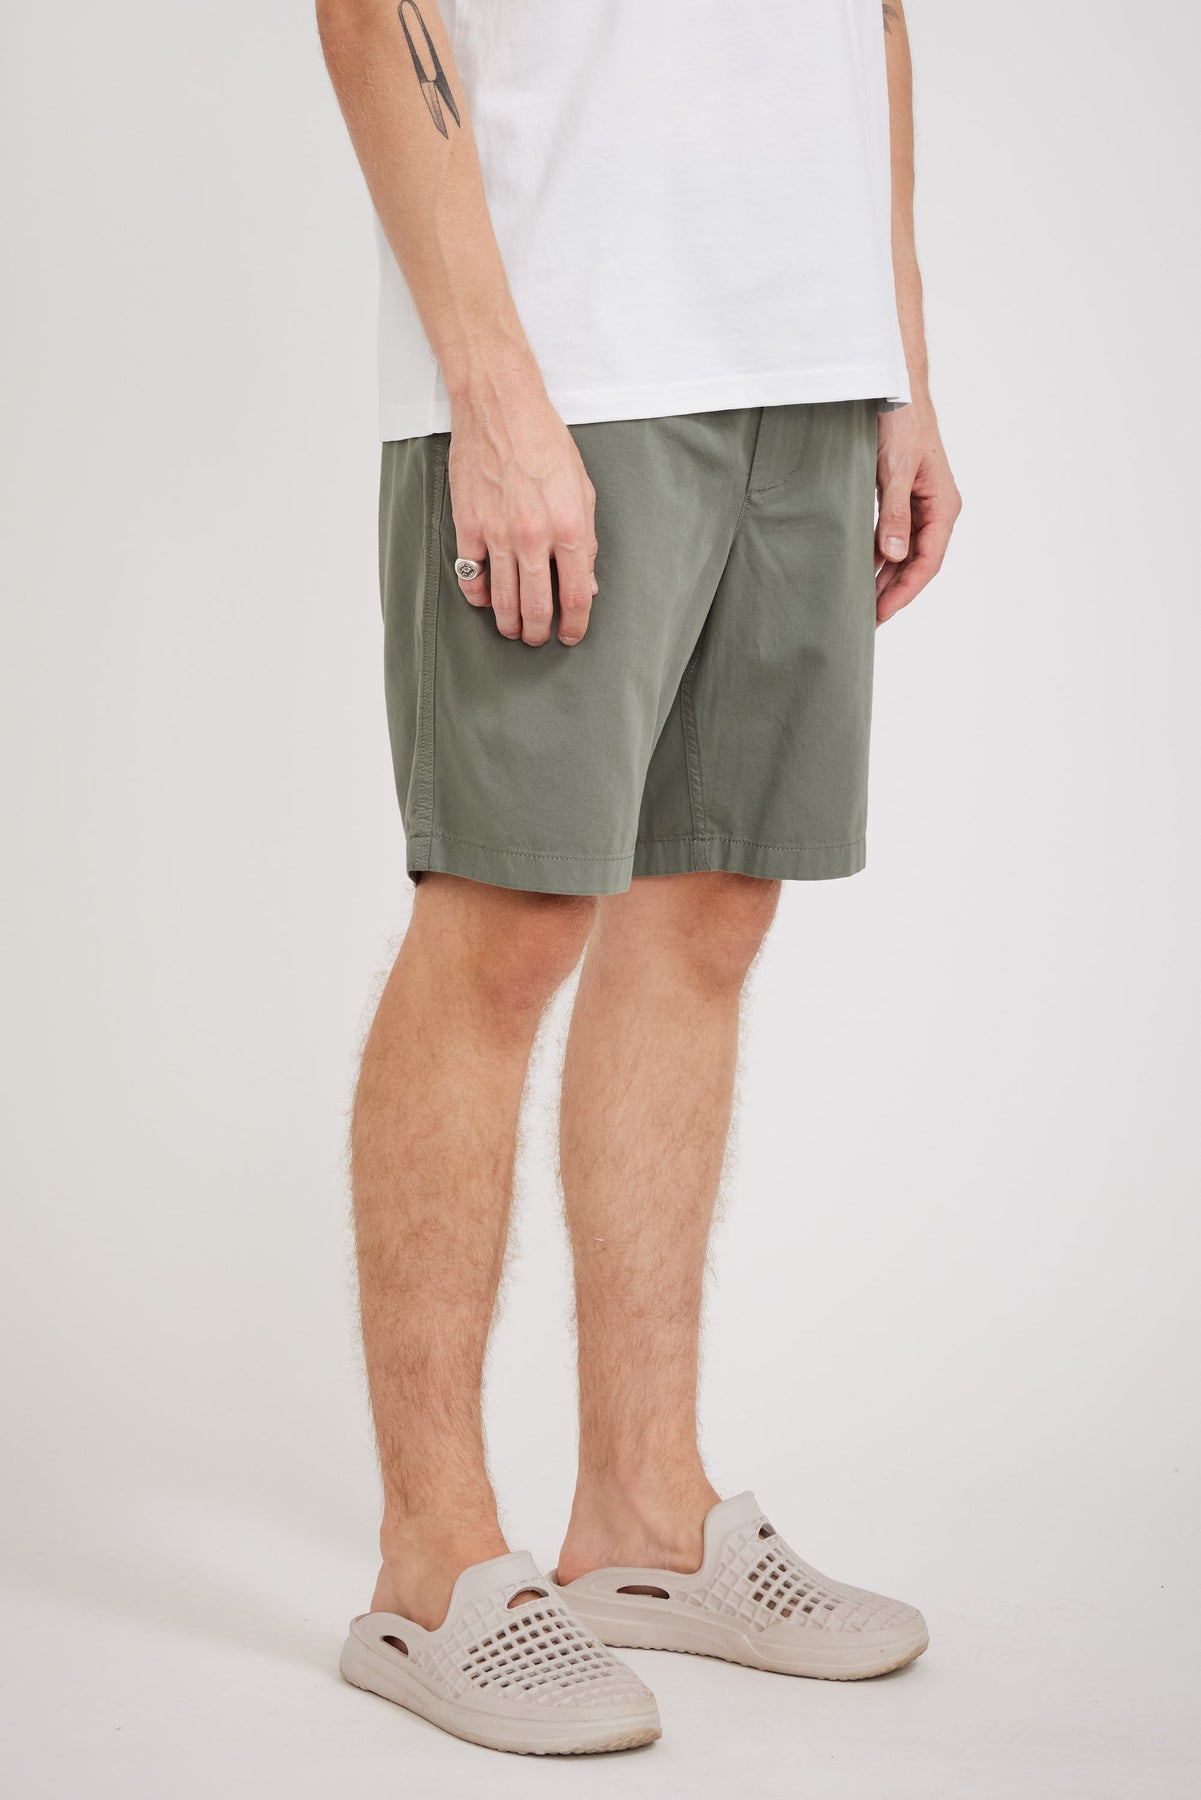 Tides Pattern Mesh Zip Shorts (sage)1個